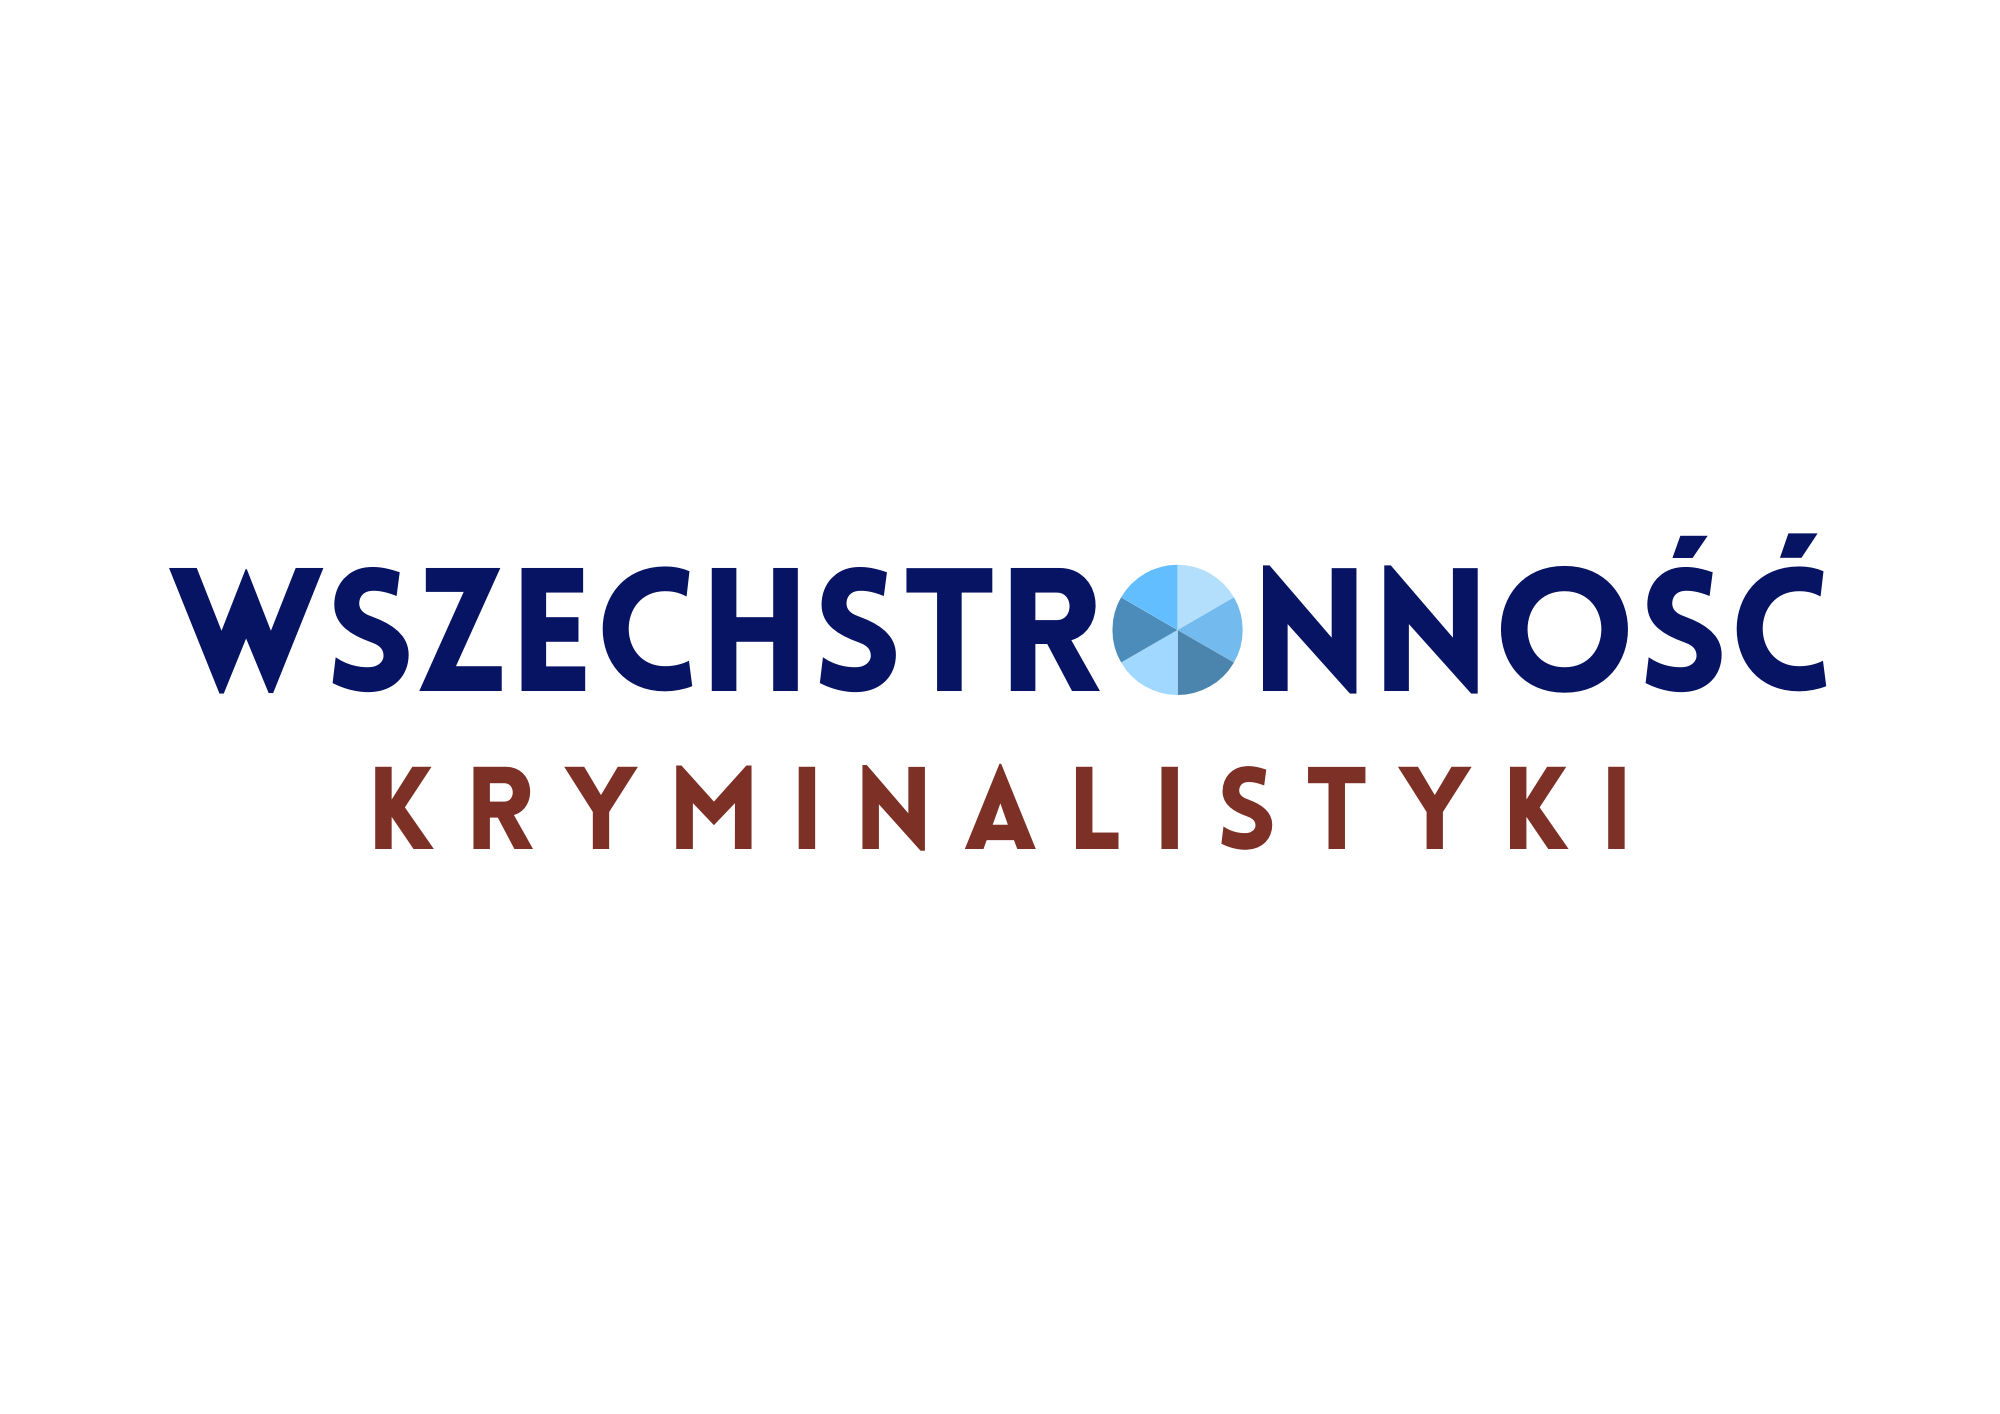 Grafika na potrzeby Ogólnopolskiej Konferencji Naukowej "Wszechstronność Kryminalistyki".